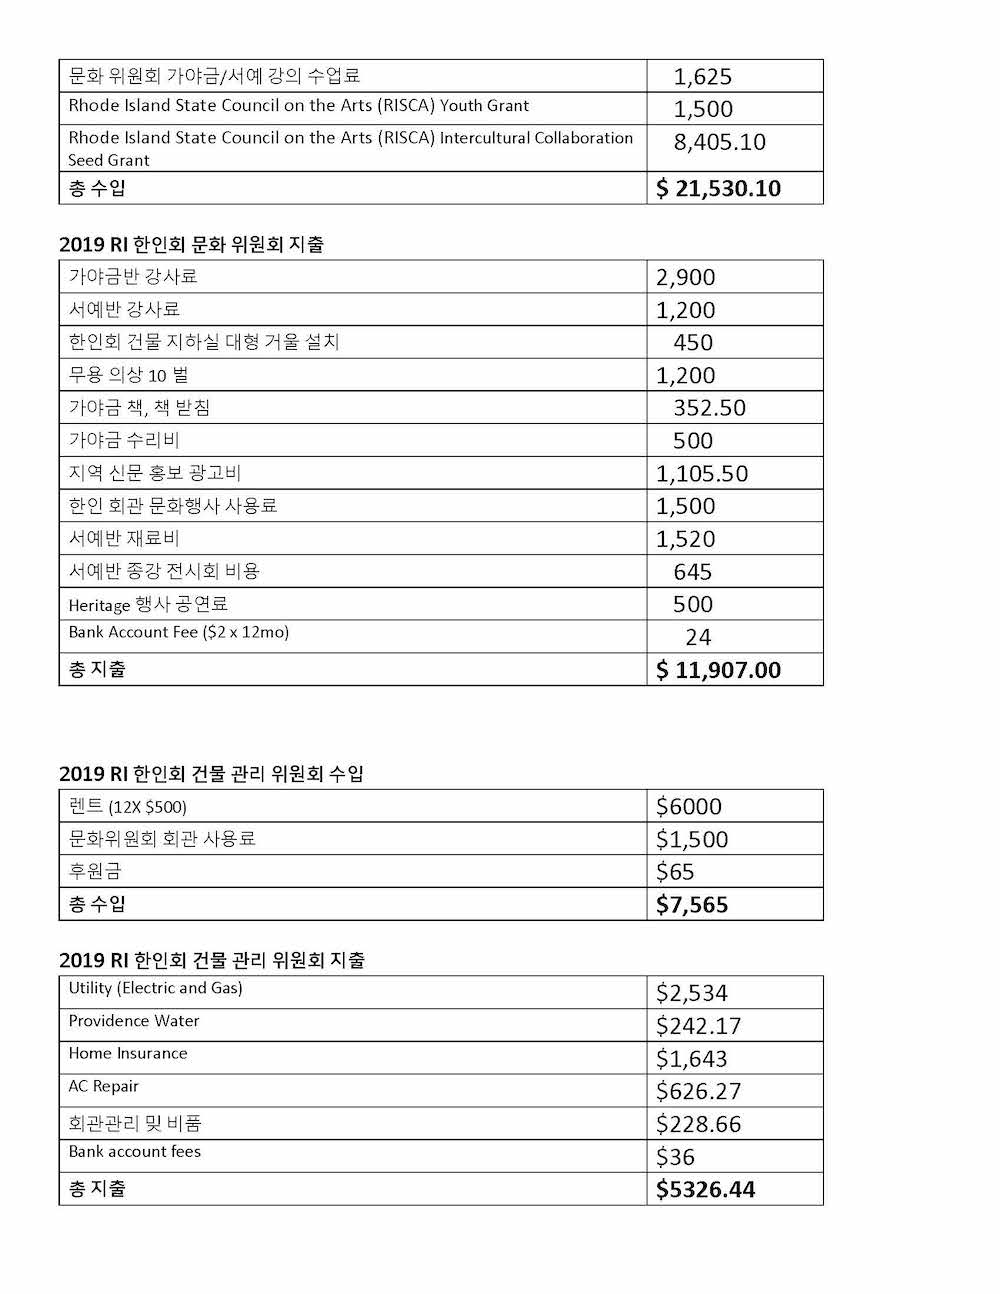 KAARI Finance Table 2019_Page_3.jpg